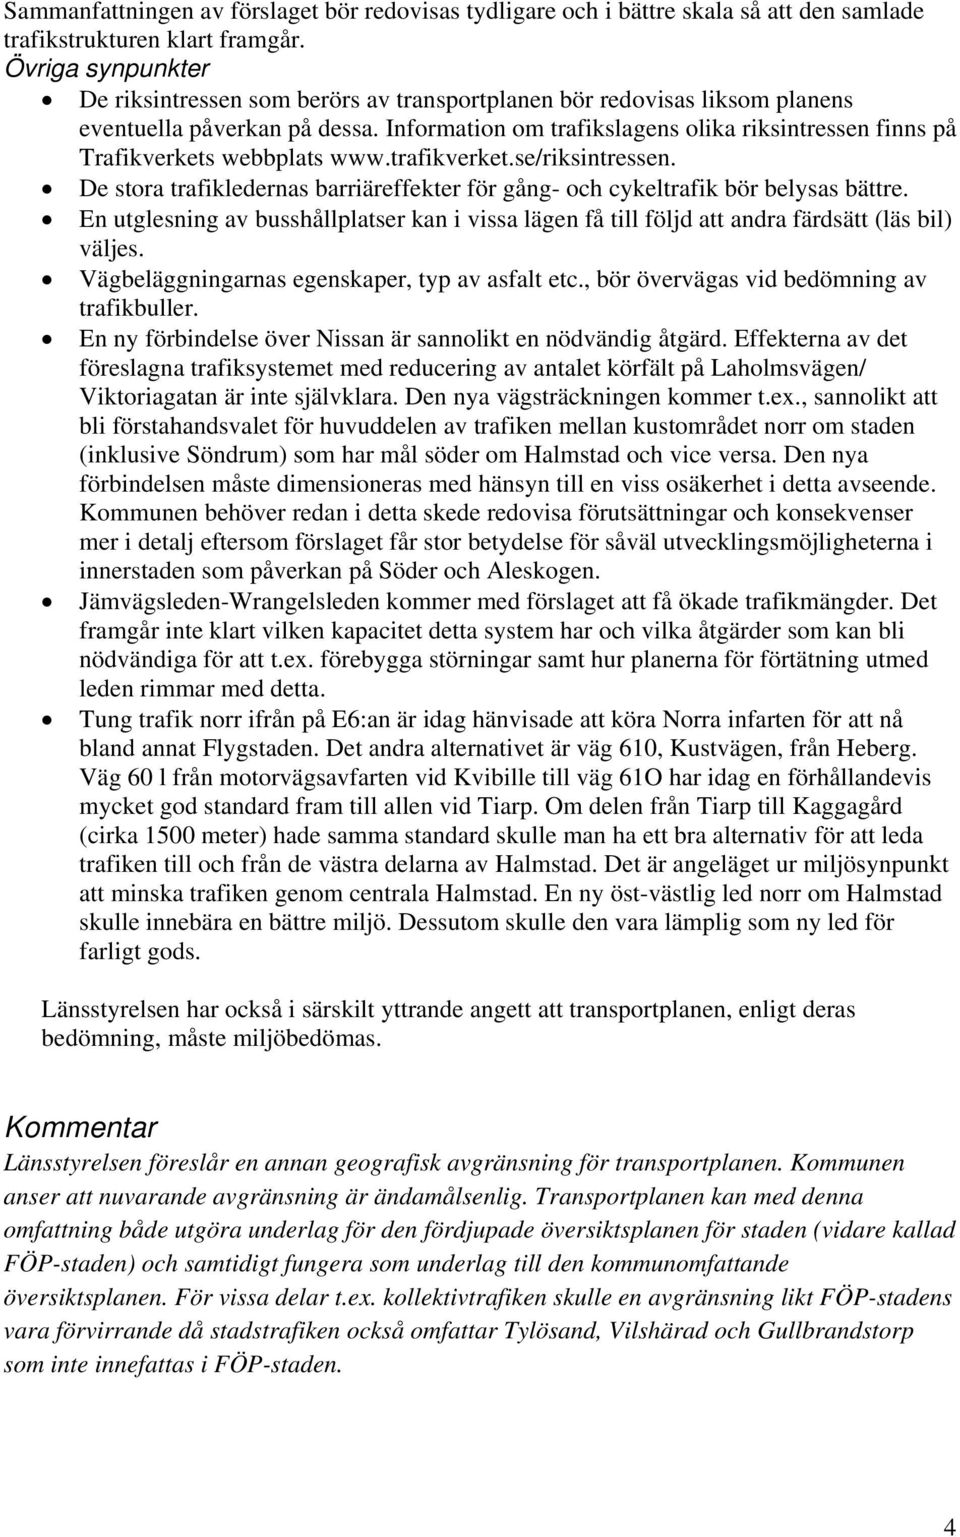 Information om trafikslagens olika riksintressen finns på Trafikverkets webbplats www.trafikverket.se/riksintressen.